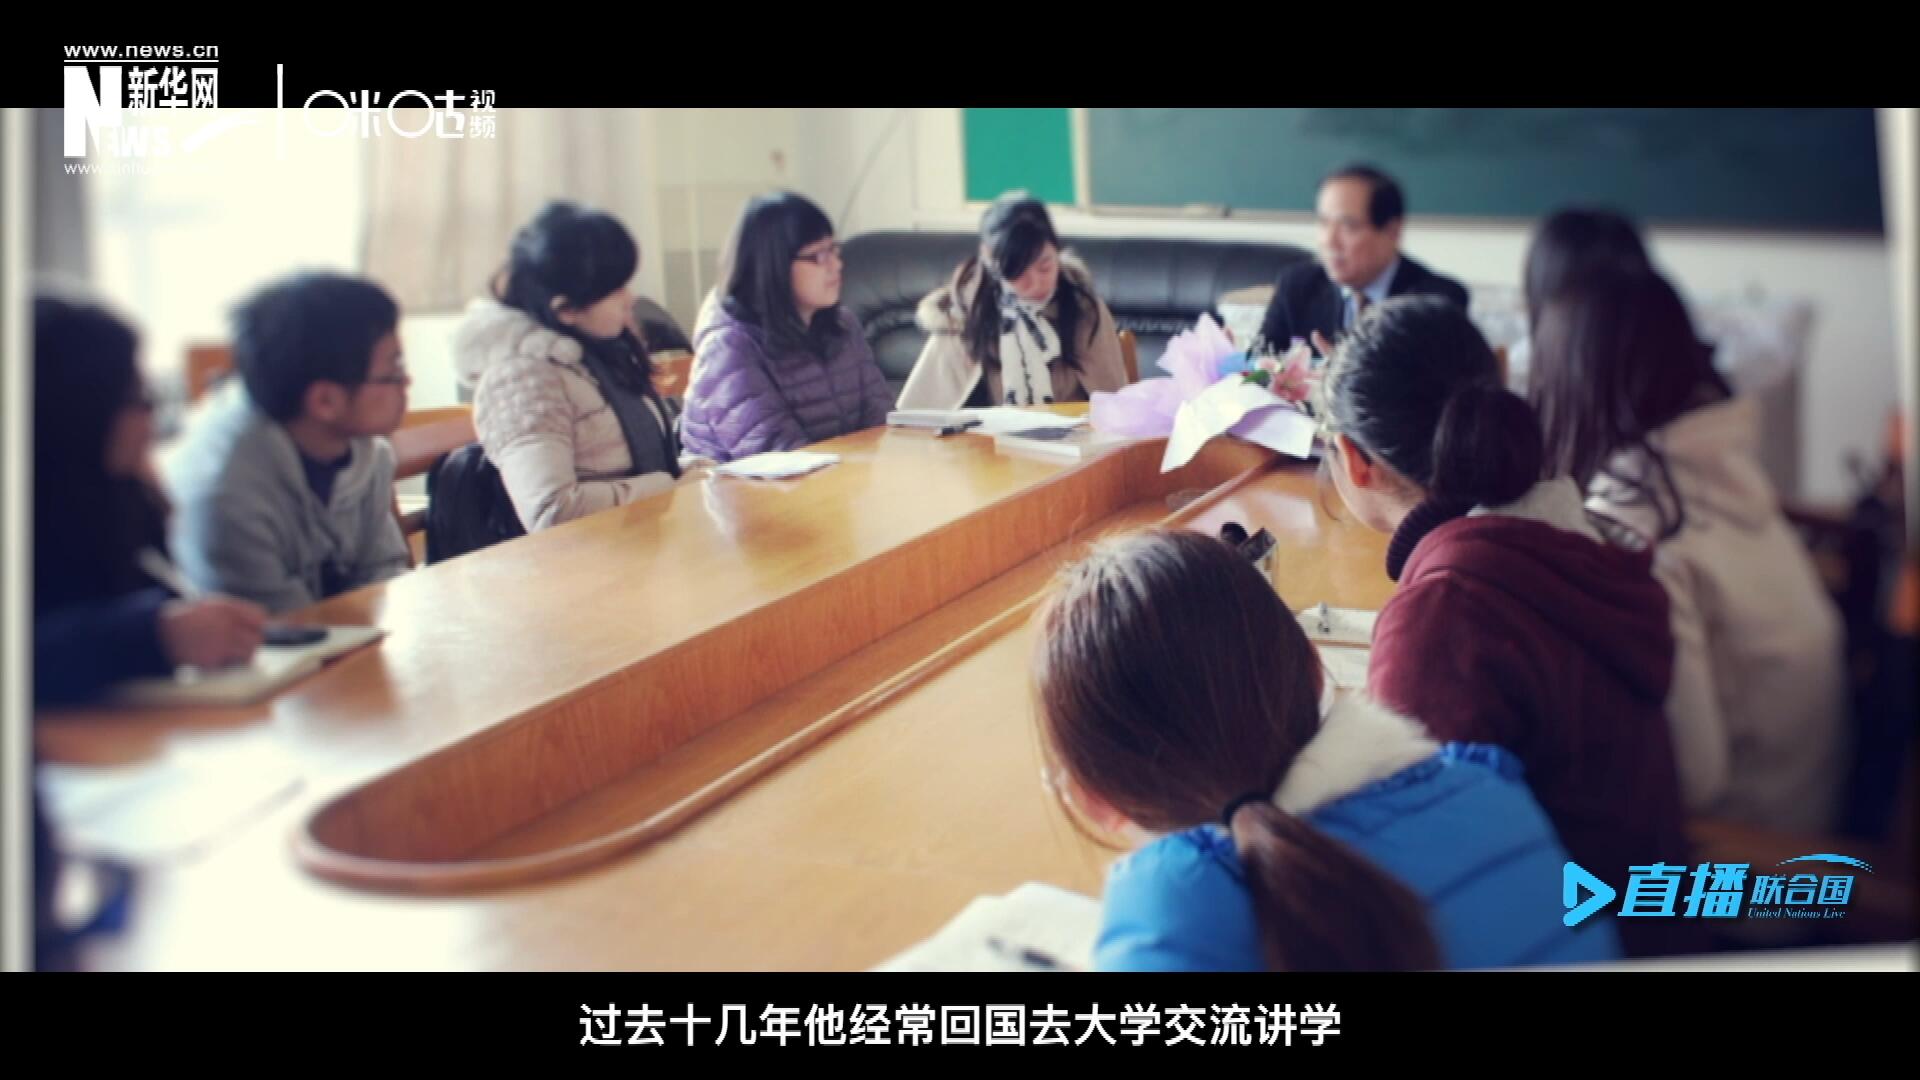 過去十幾年陳峰經常回國去大學交流講學，給年輕人分享他學習、工作和生活的故事。